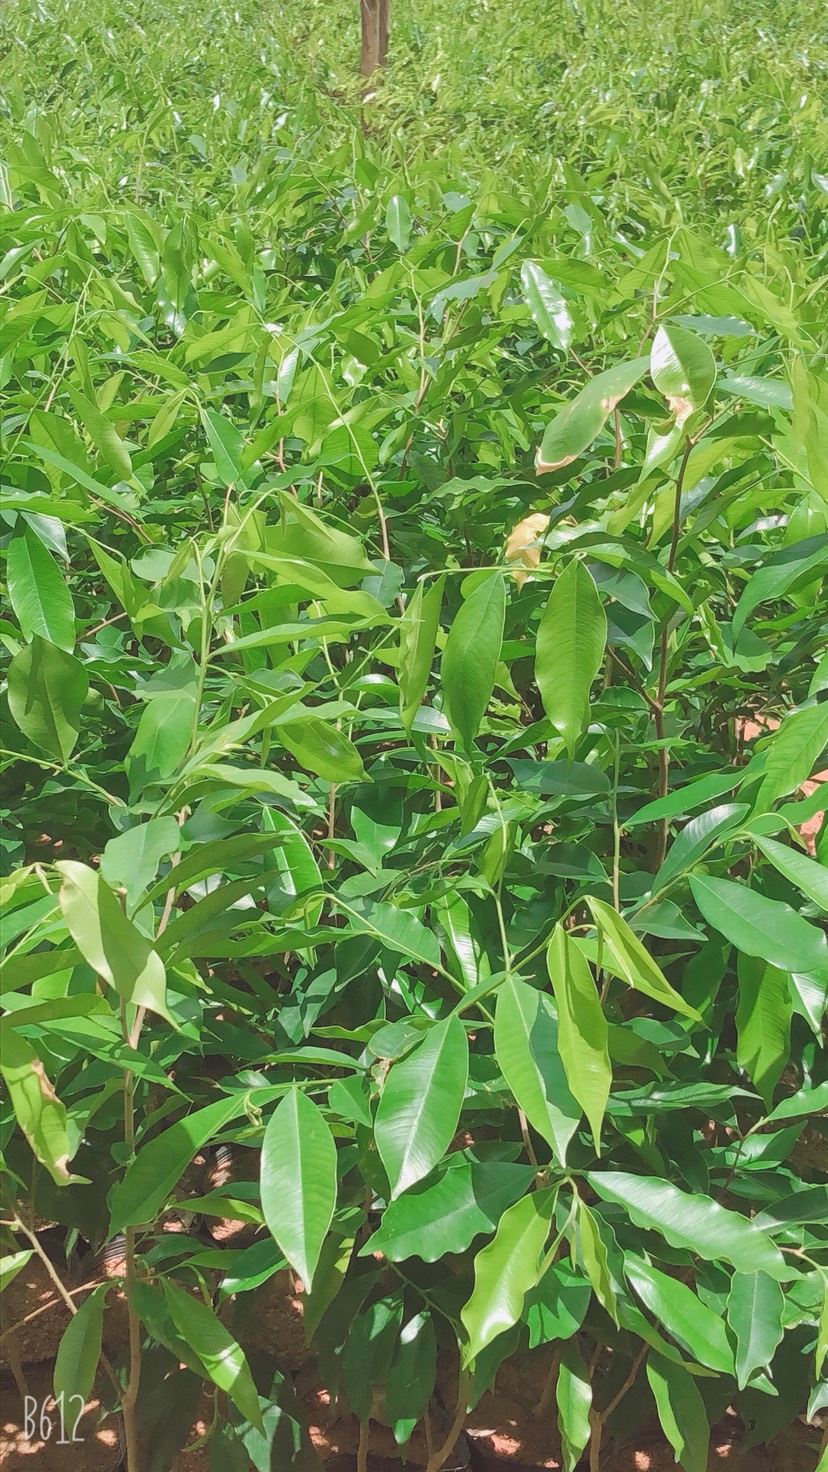 广西壮族自治区钦州市灵山县沉香 树,有一米高,有六十高,小杯苗通通有